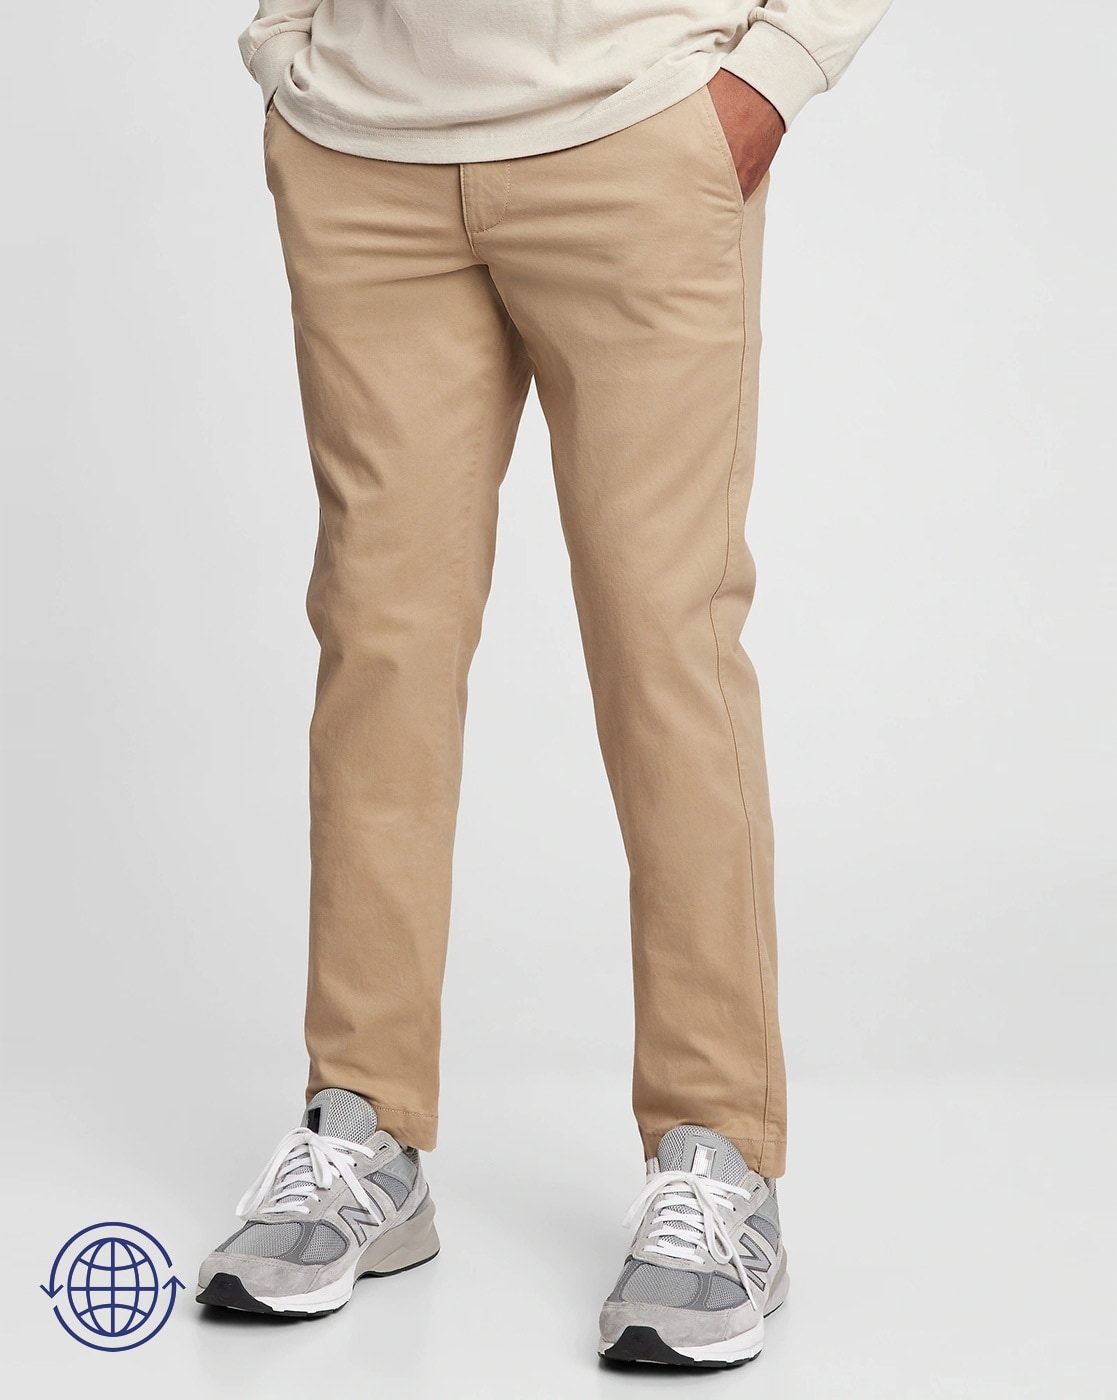 GAP Regular Fit Men Khaki Trousers - Buy GAP Regular Fit Men Khaki Trousers  Online at Best Prices in India